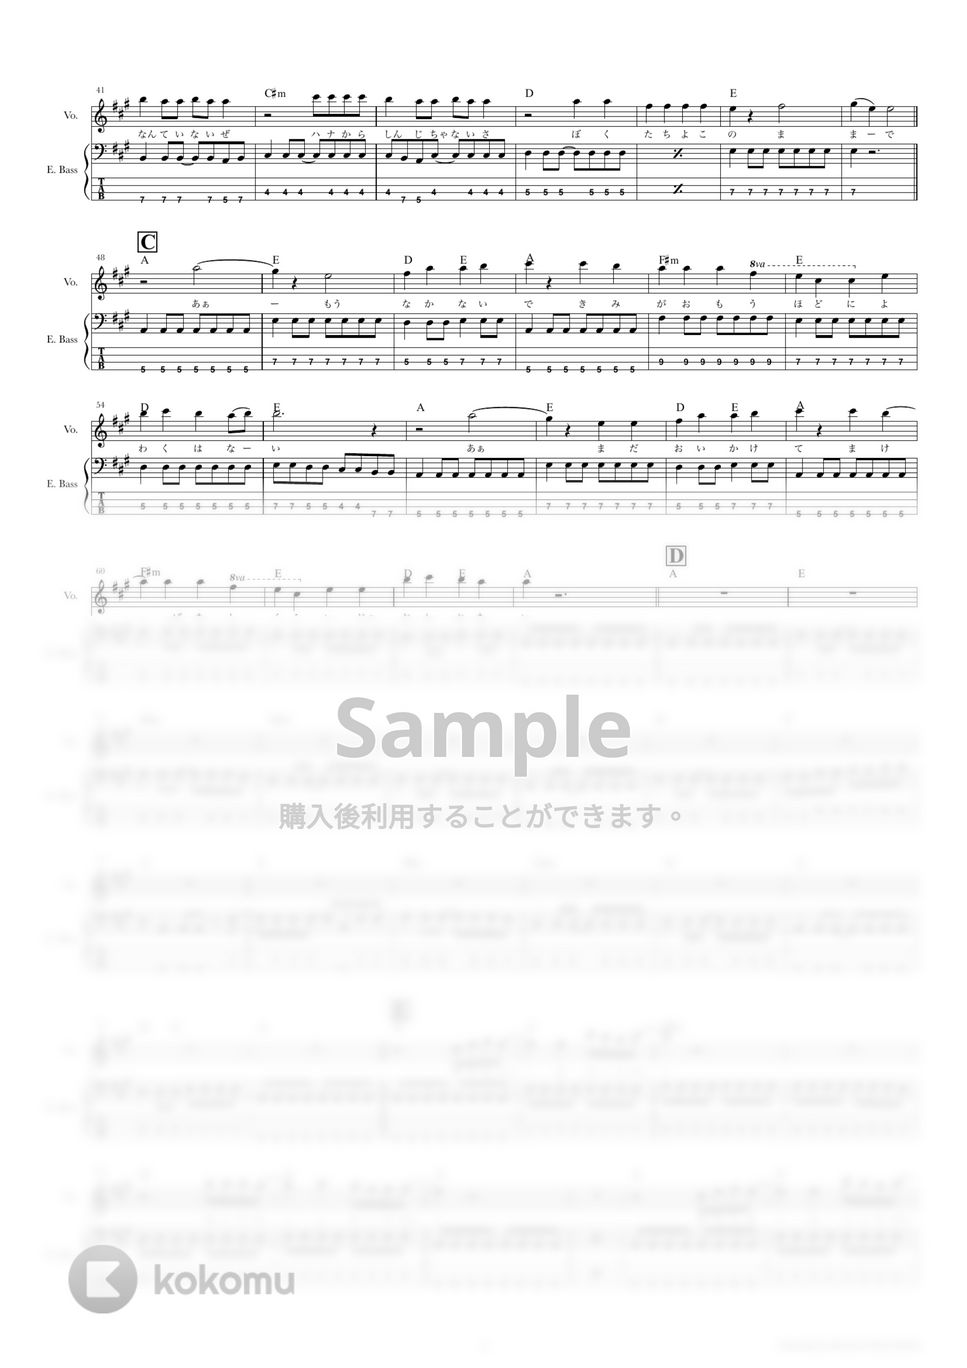 Hump Back - 拝啓、少年よ (ベーススコア・歌詞・コード付き) by TRIAD GUITAR SCHOOL